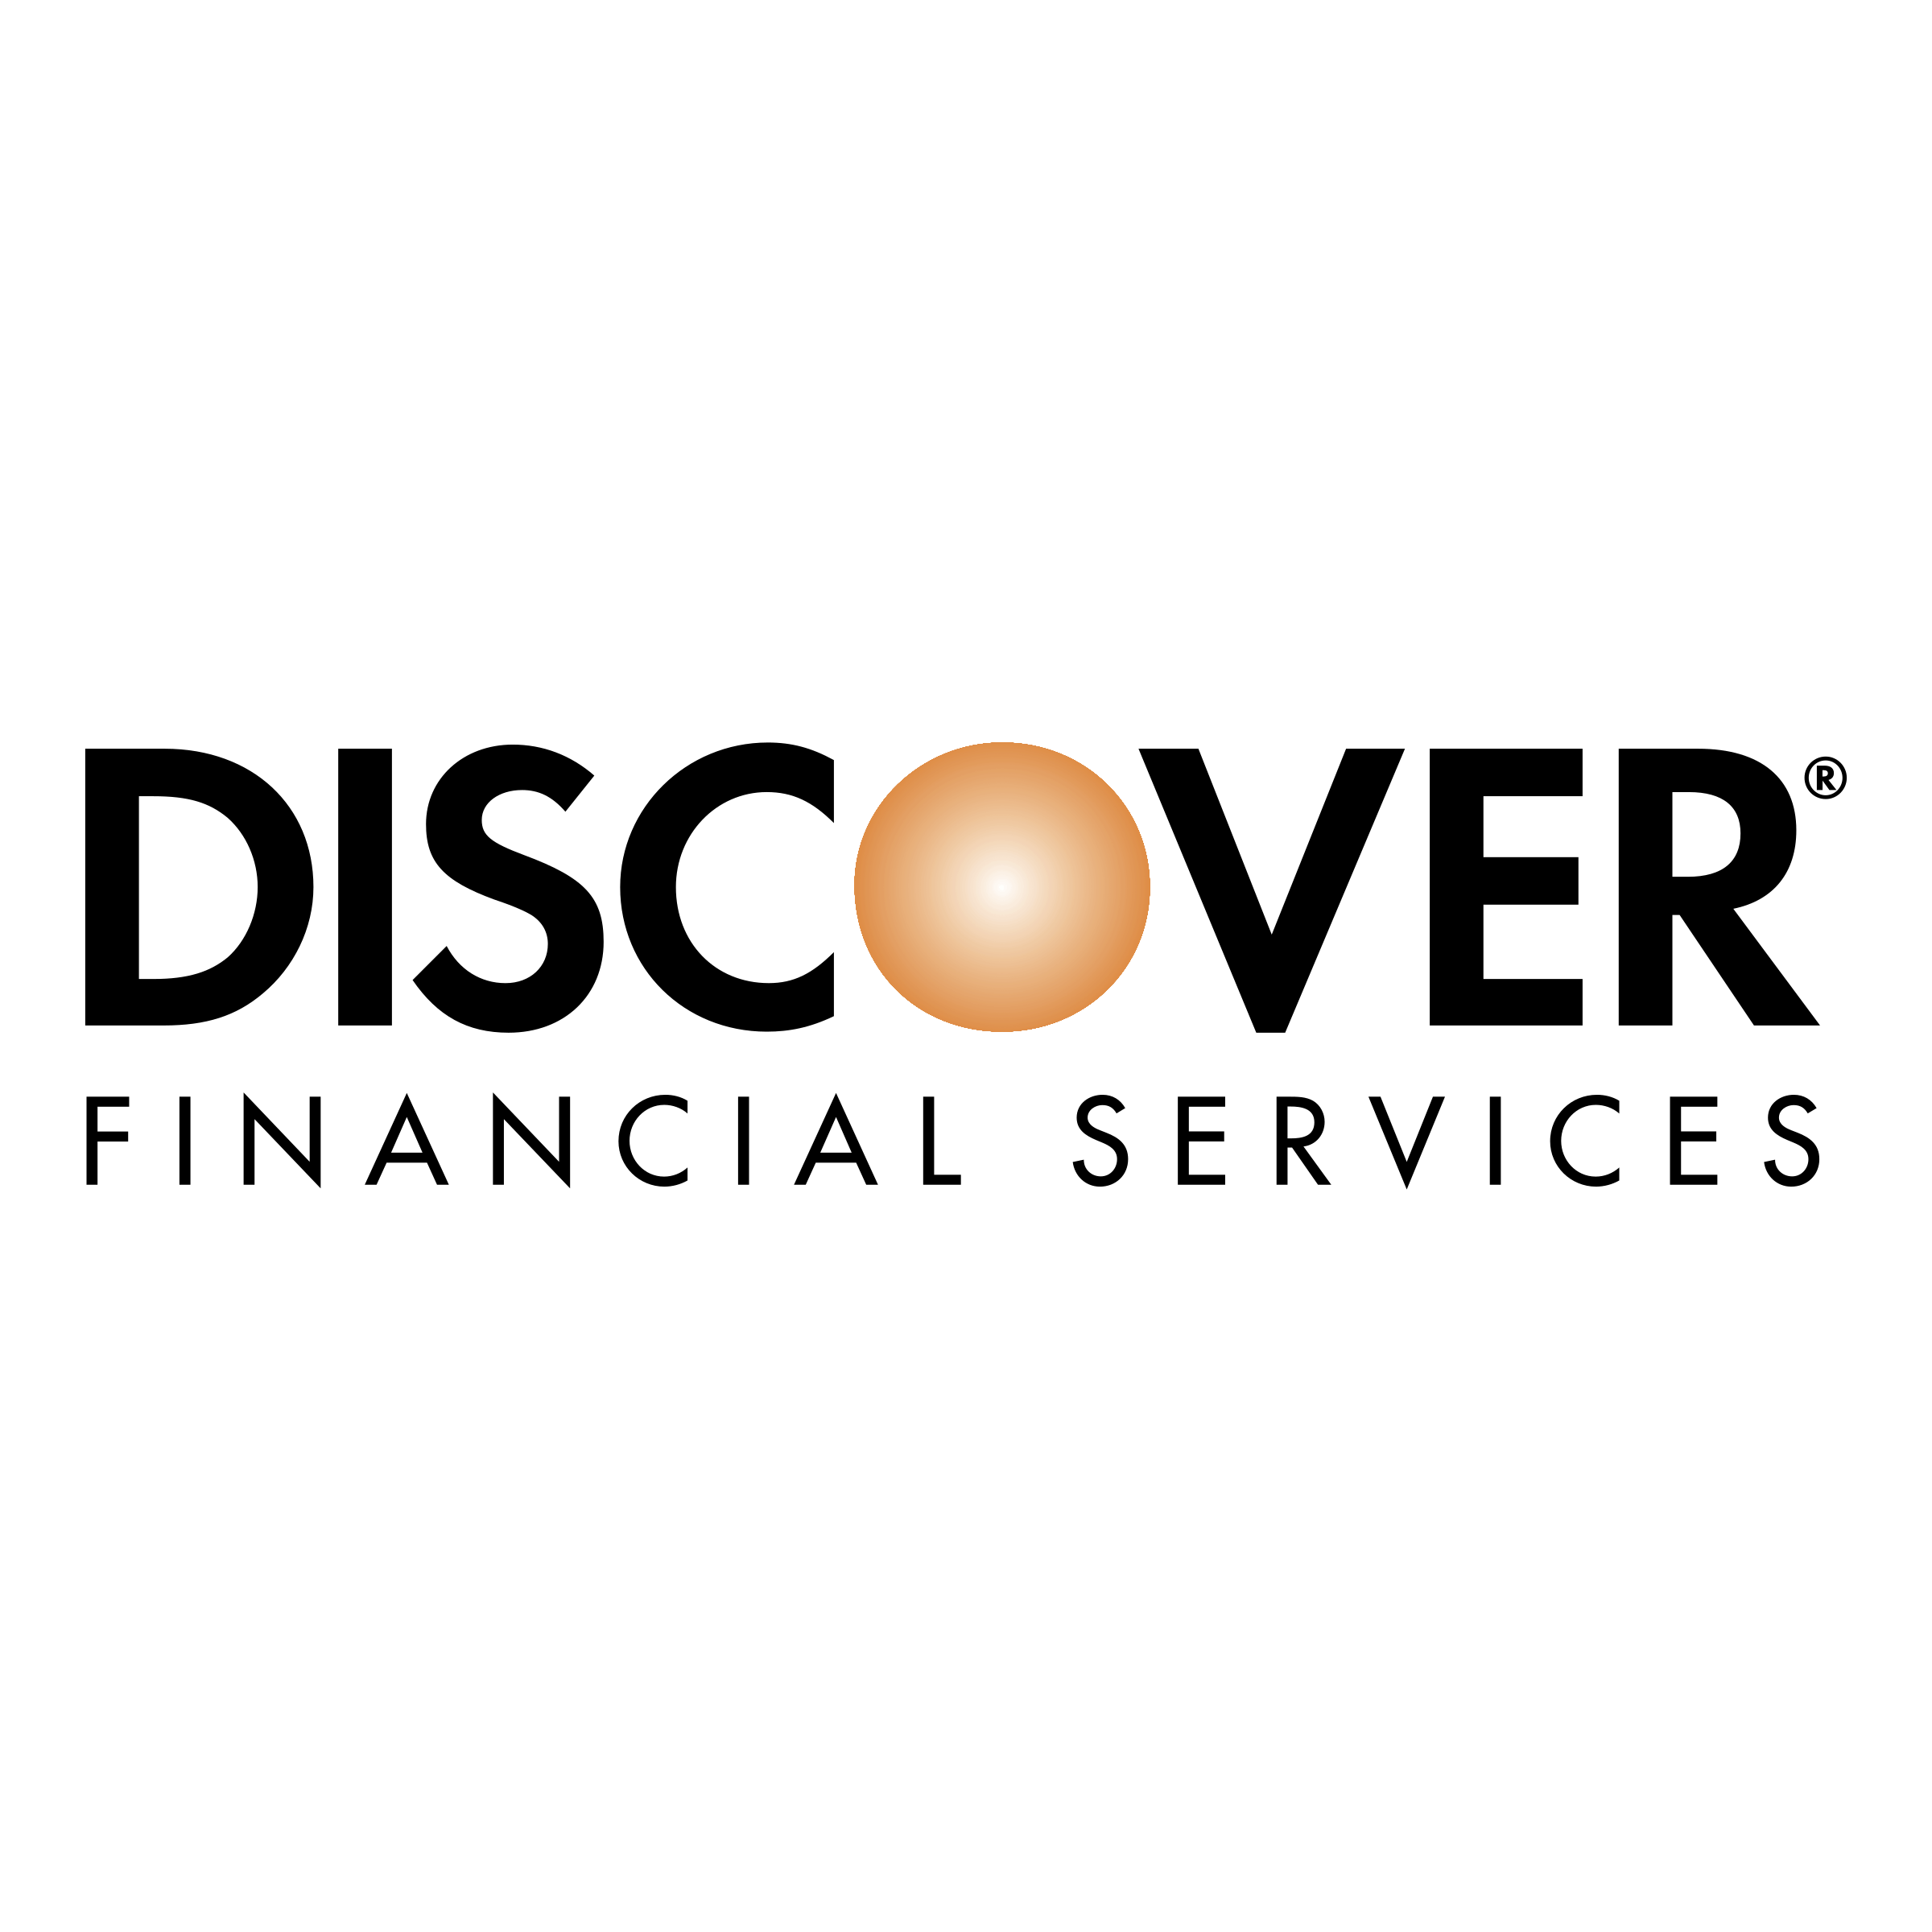 Discover Logo - Discover Logo PNG Transparent & SVG Vector - Freebie Supply